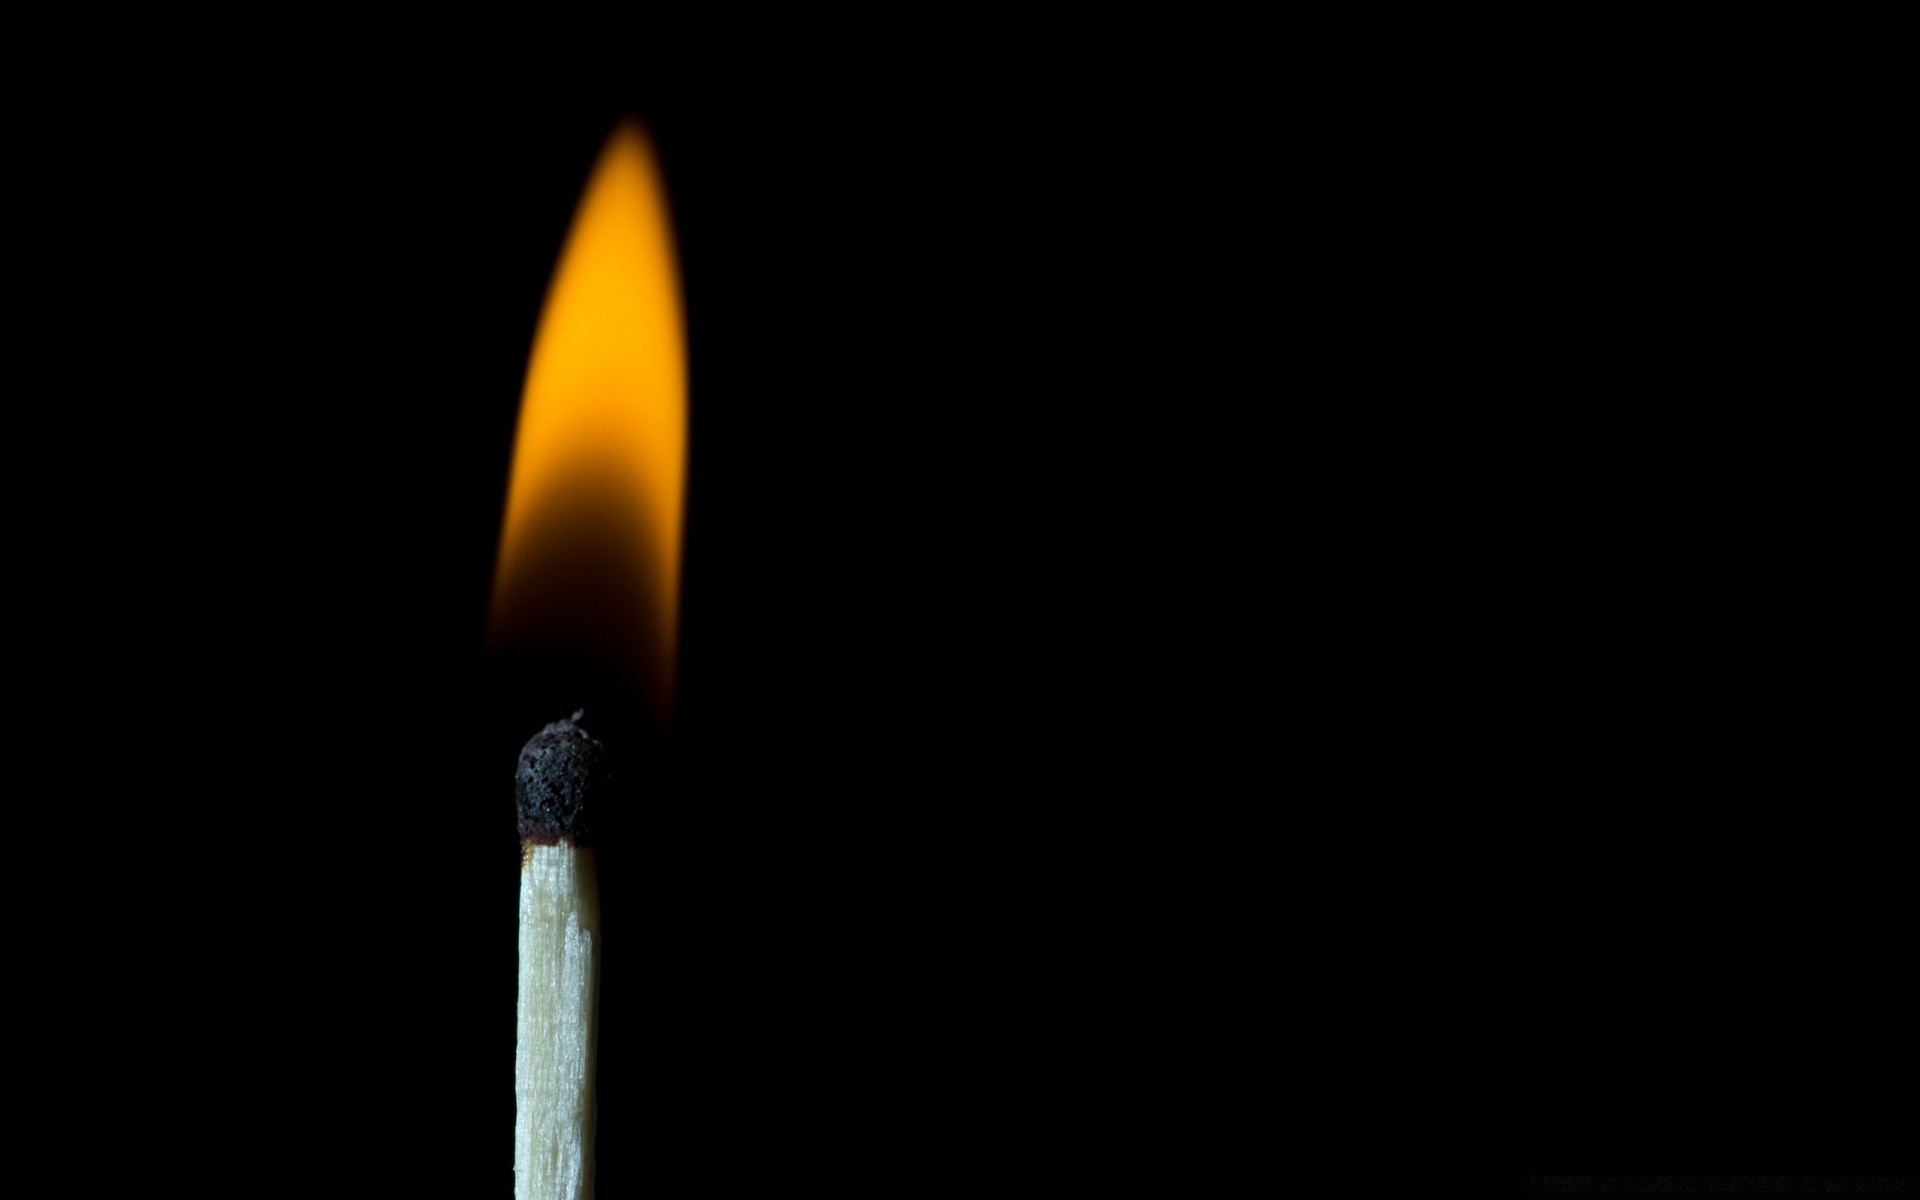 fire flame burnt burn ash dark danger smoke candle matchstick heat light flammable hot one stub